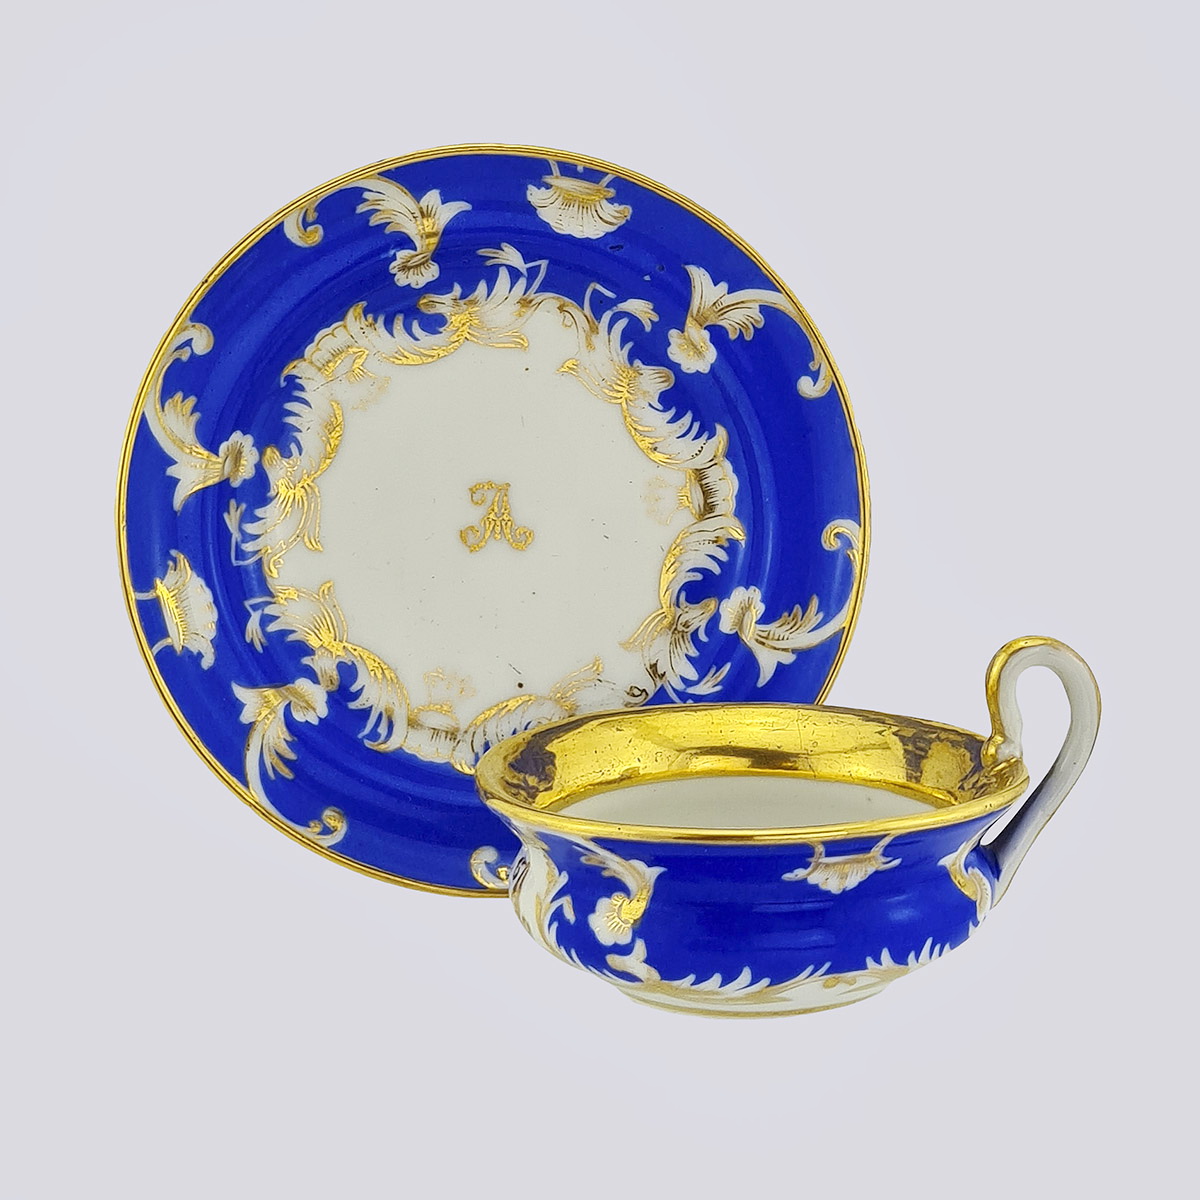 Шоколадная пара синего покрытия с золотом (Завод В.Д. Сабанина, фарфор, 19 век)